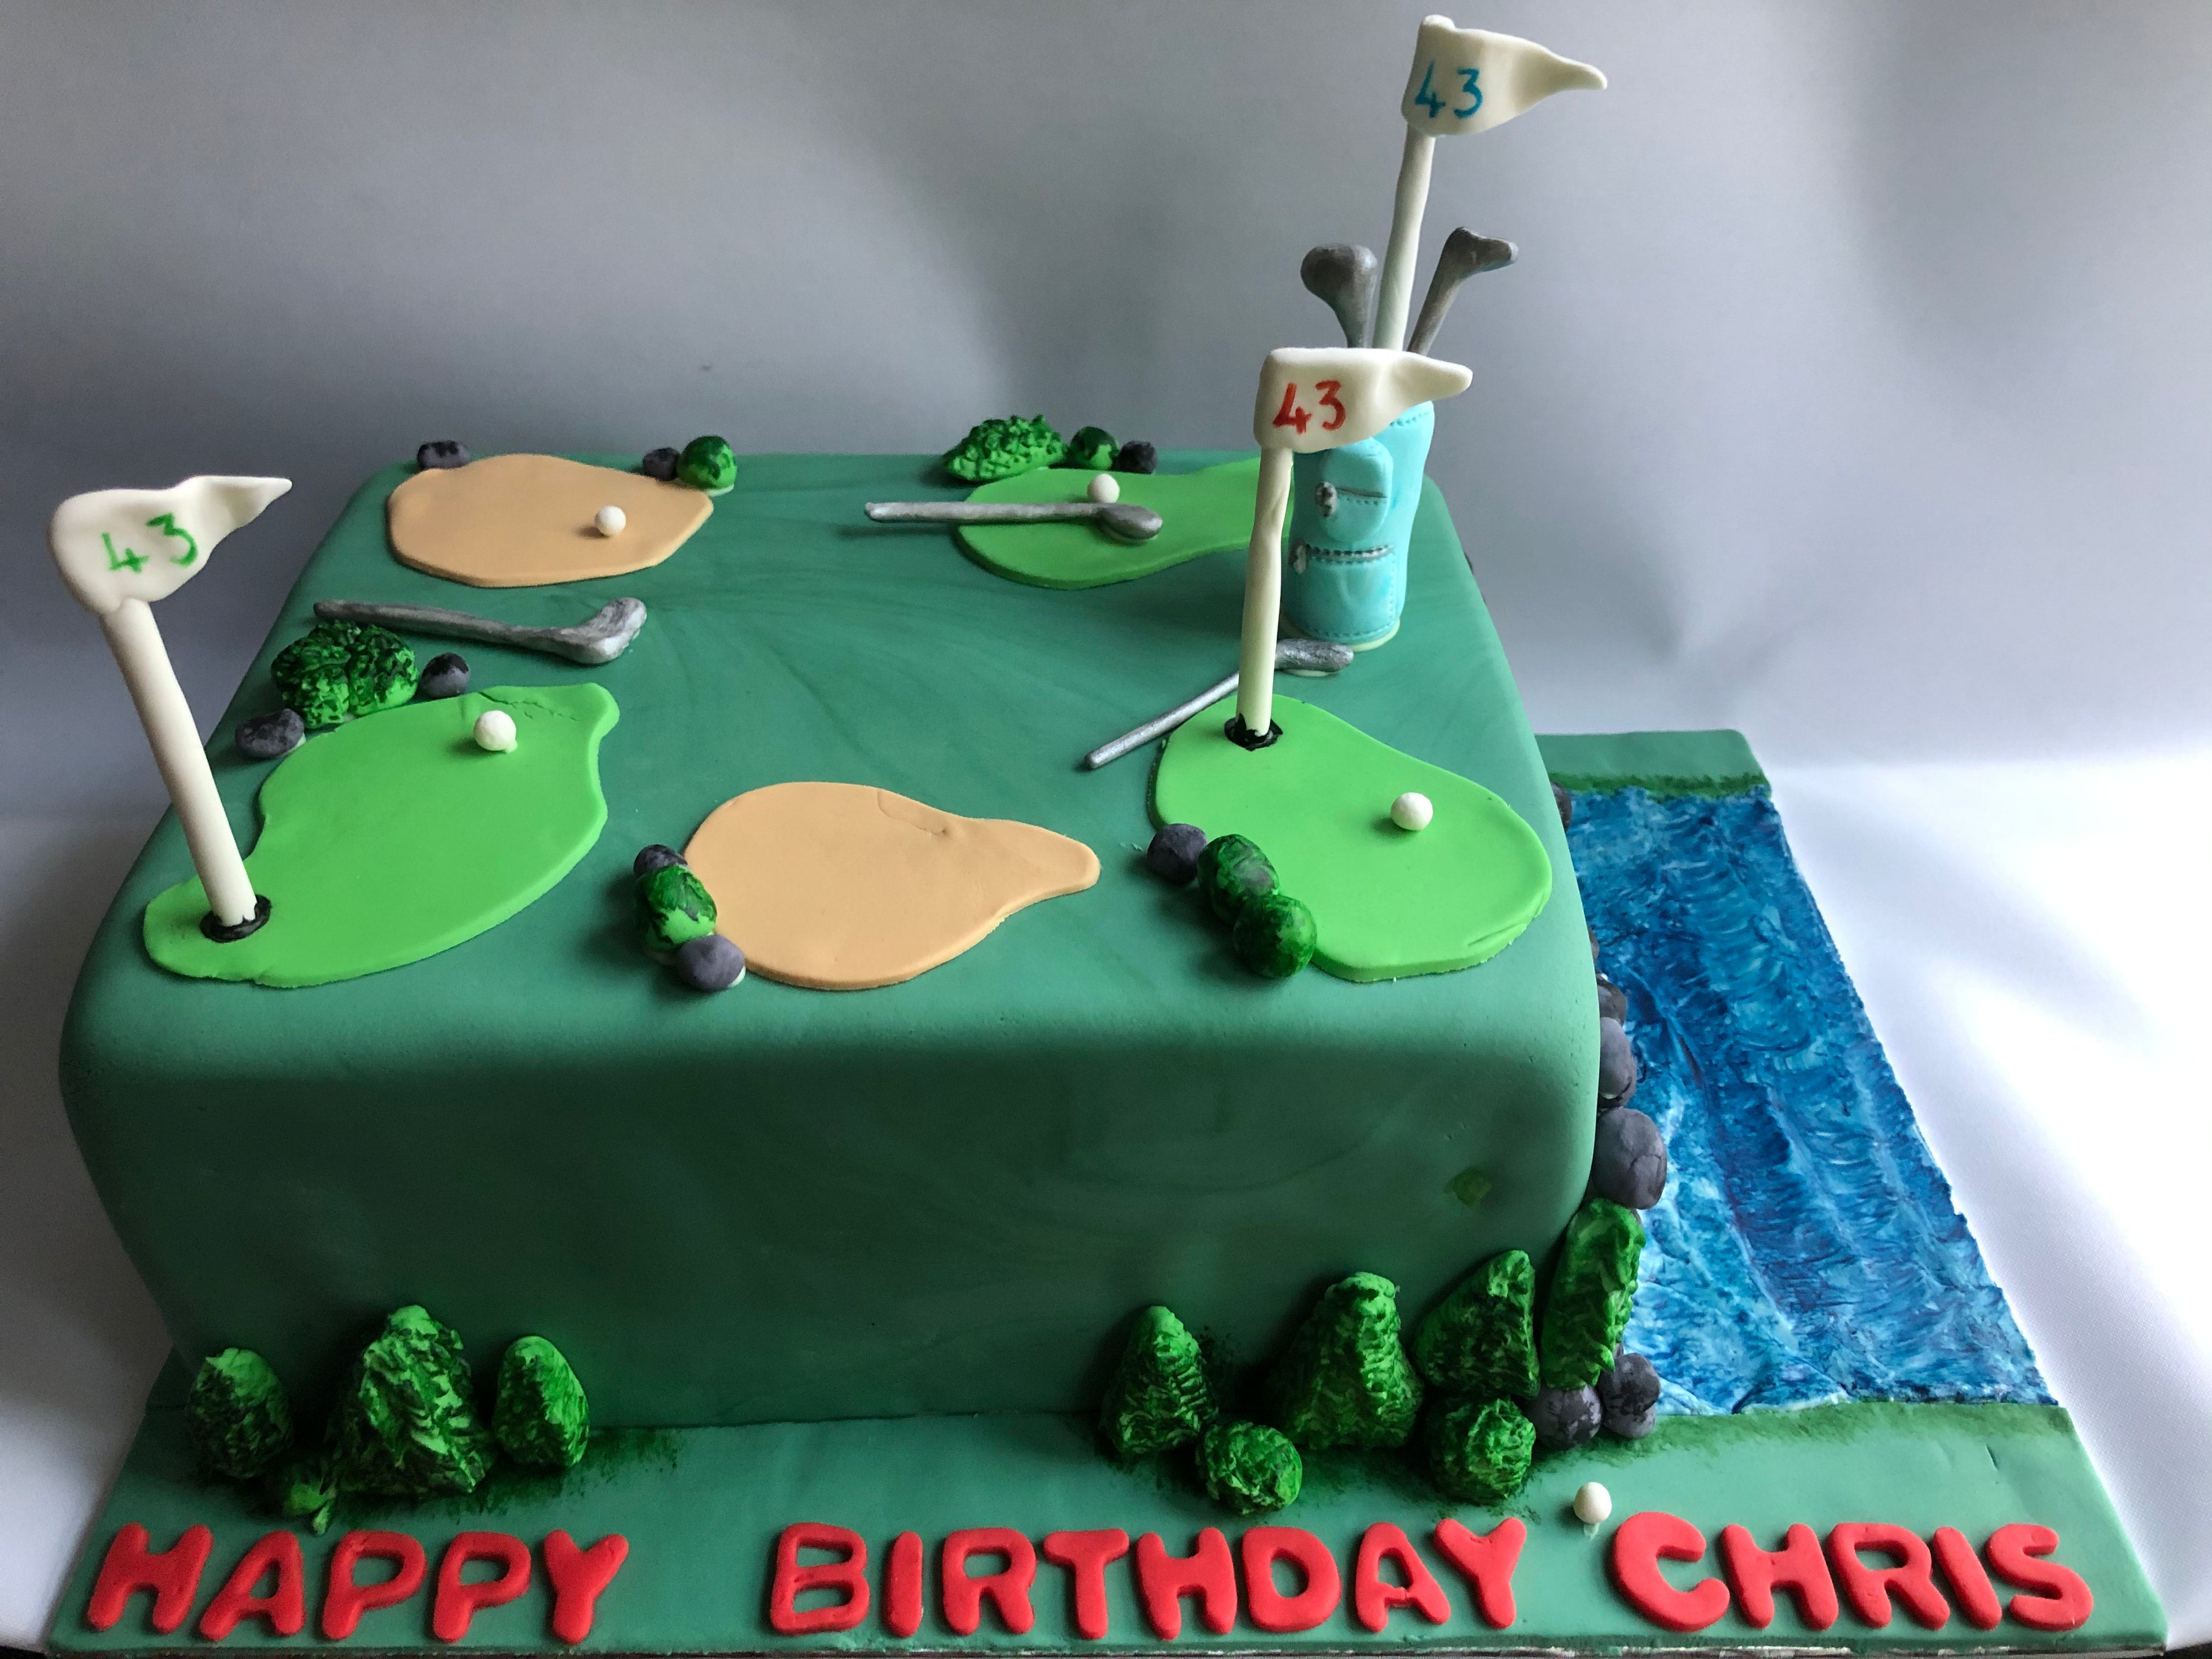 Top Golf Cakes - CakeCentral.com